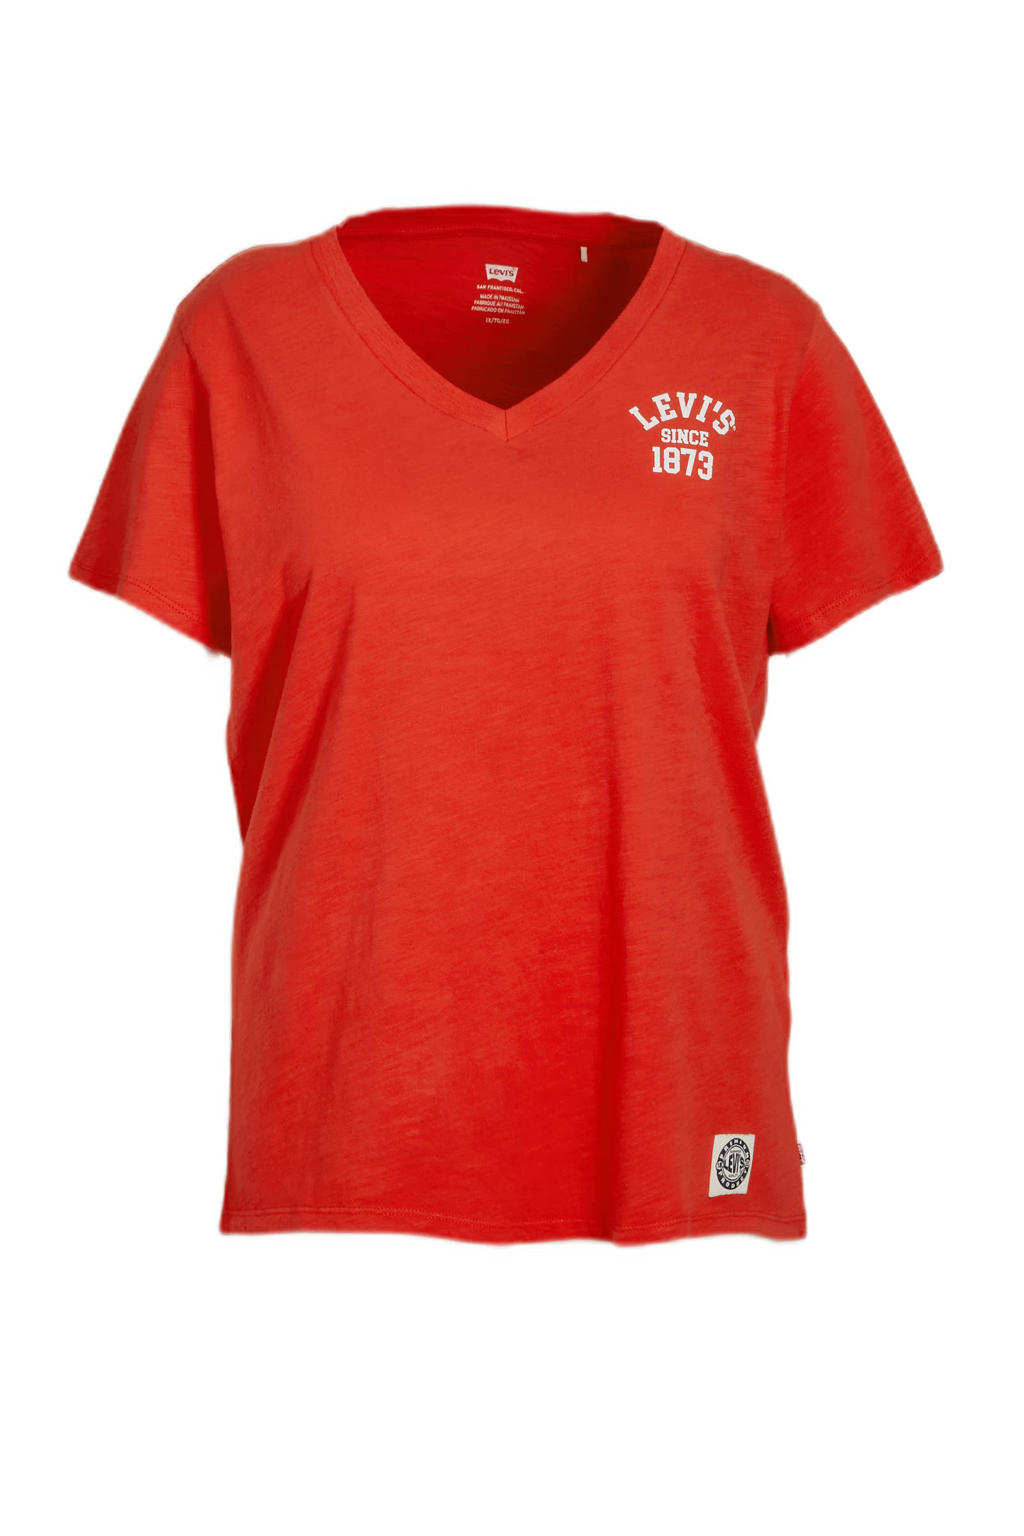 Rode dames Levi's Plus T-shirt van katoen met printopdruk, korte mouwen en V-hals